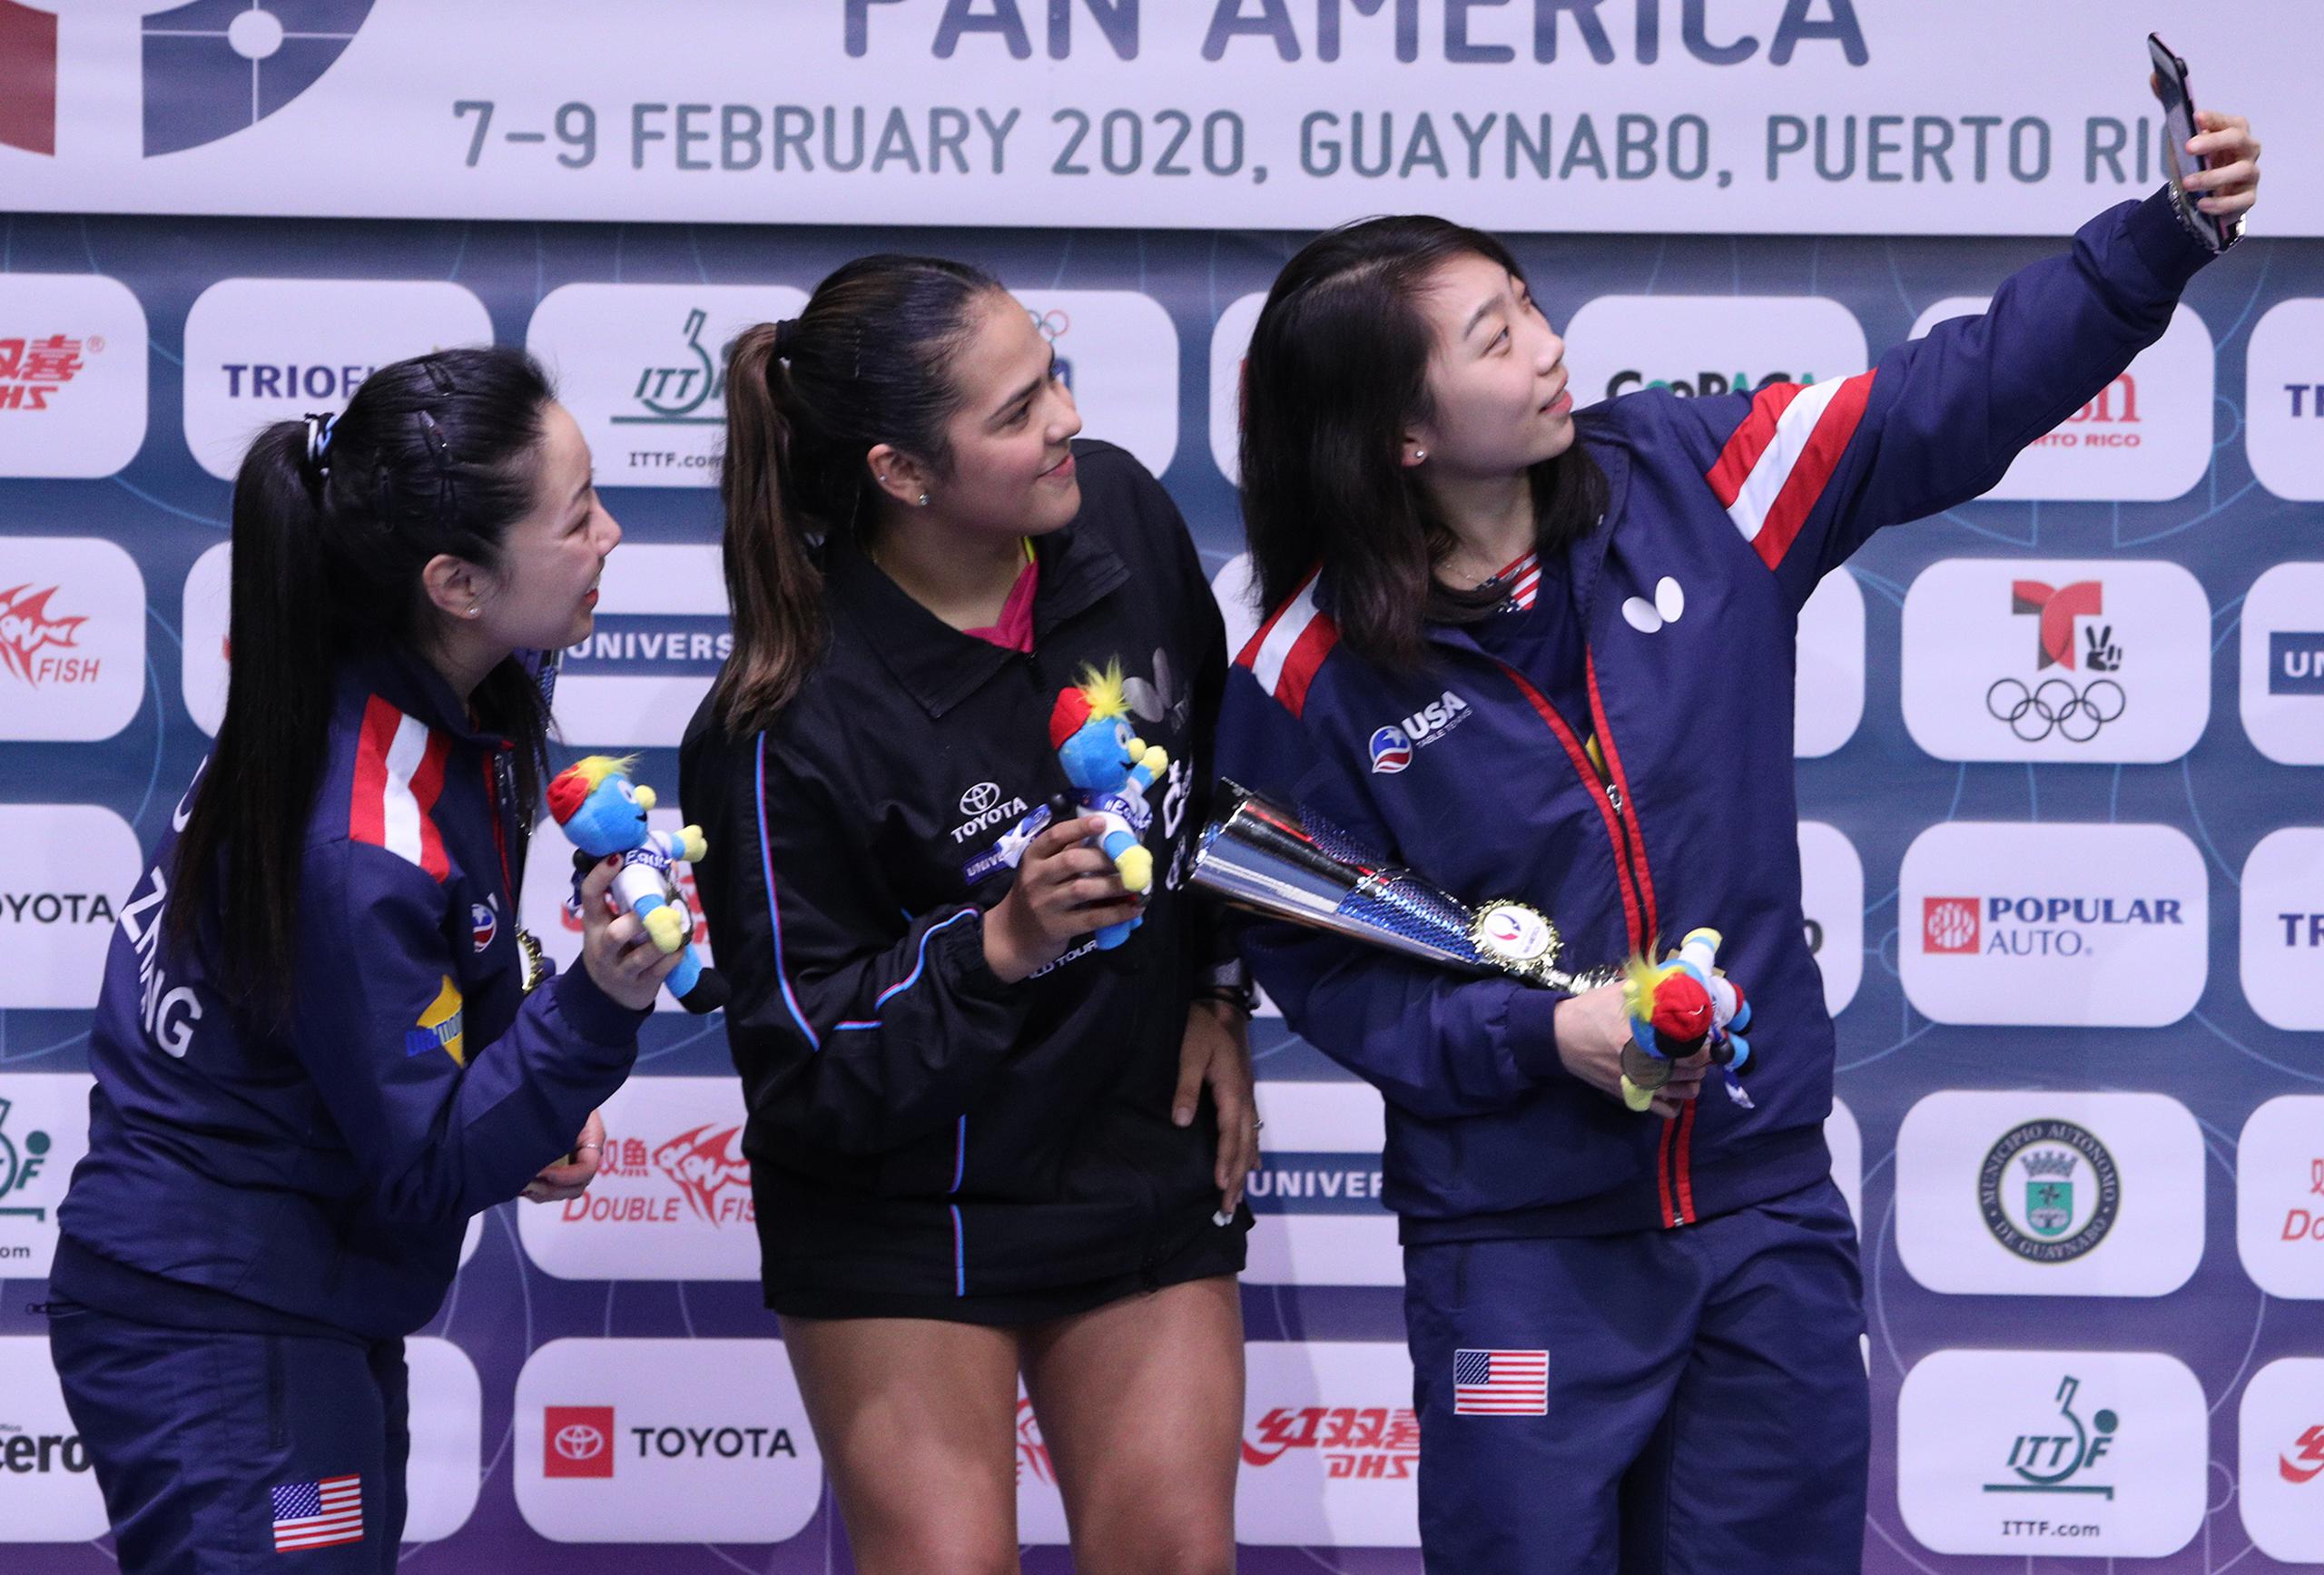 Las tres medallista posan para un selfie tras la premiación.